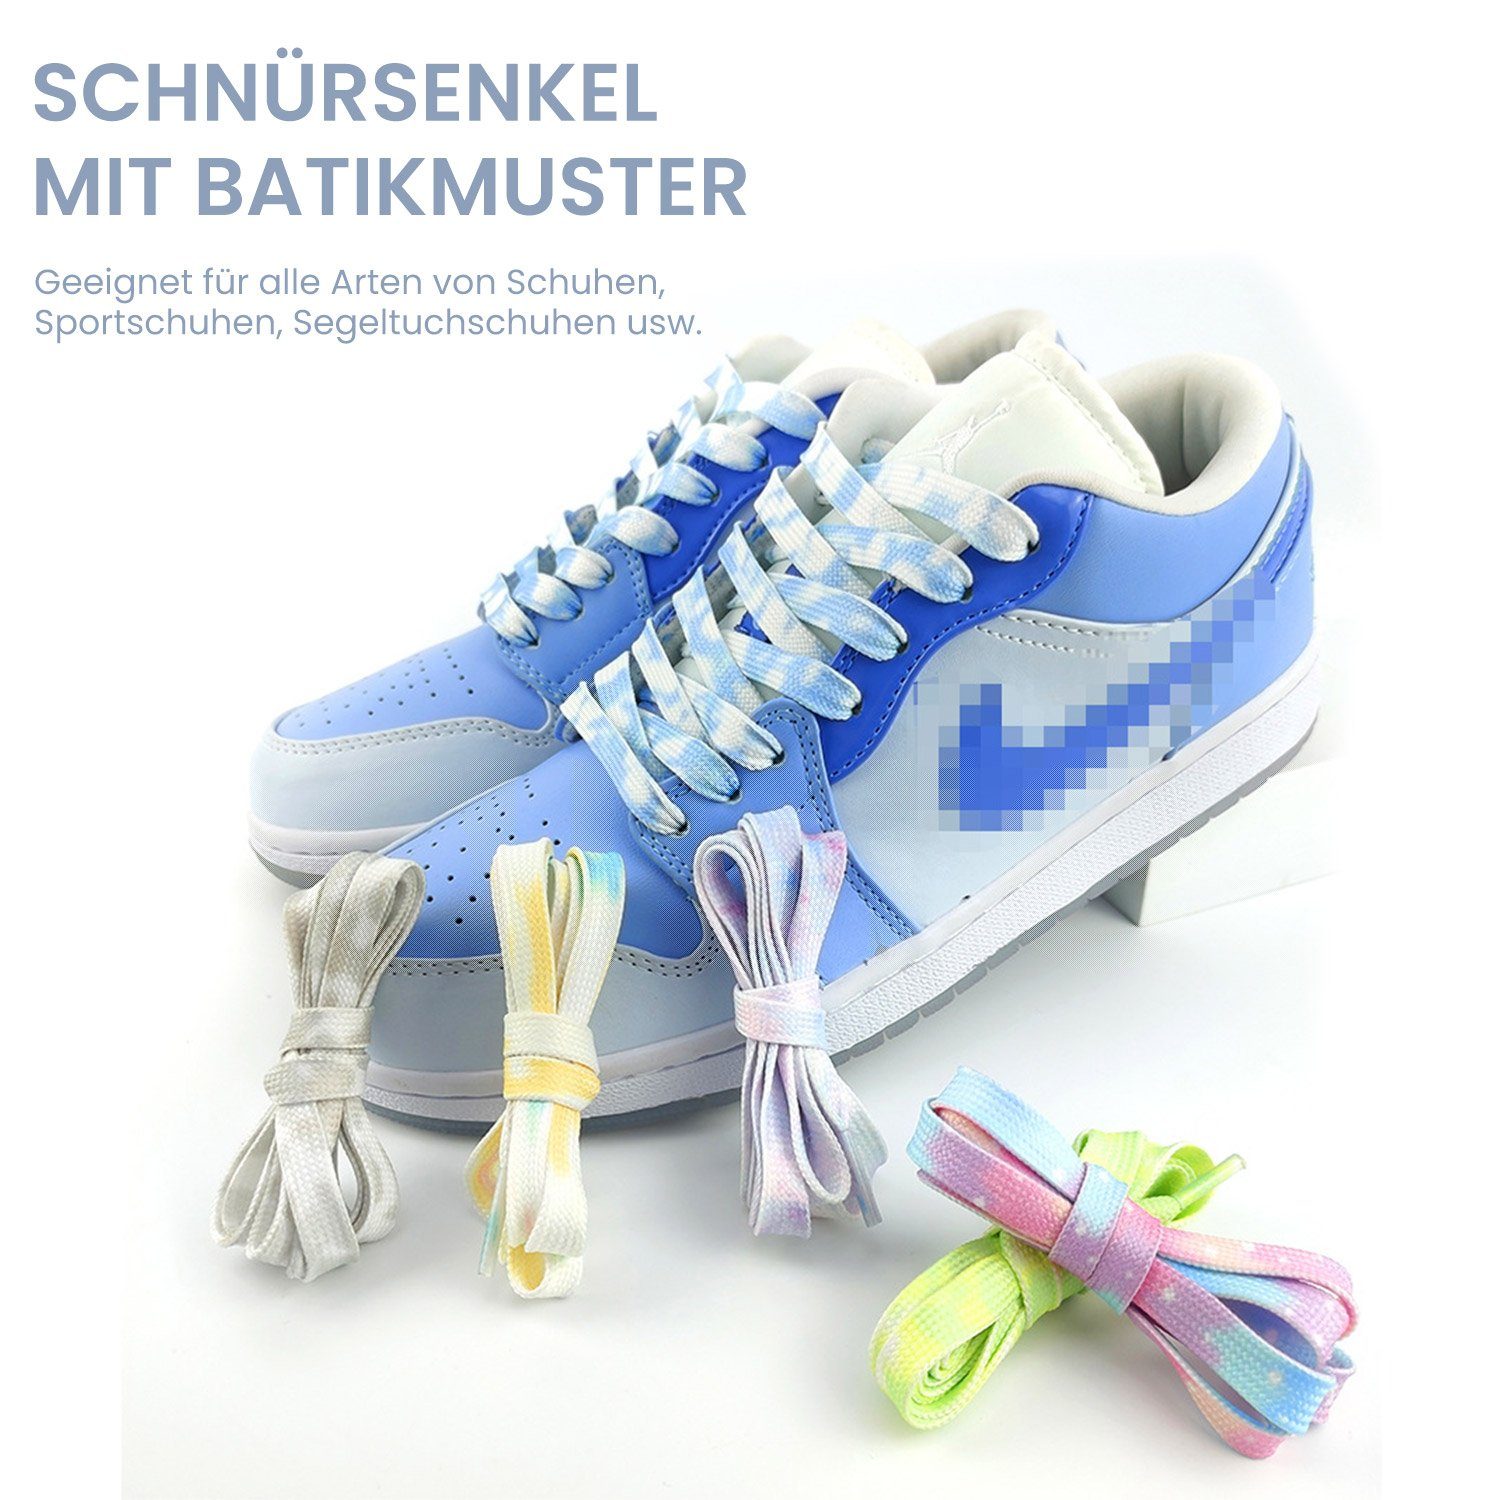 Daisred Schnürsenkel Paar Schuhbänder für Blau mm Ersatz Turnschuhe Flache Bunte 8 1